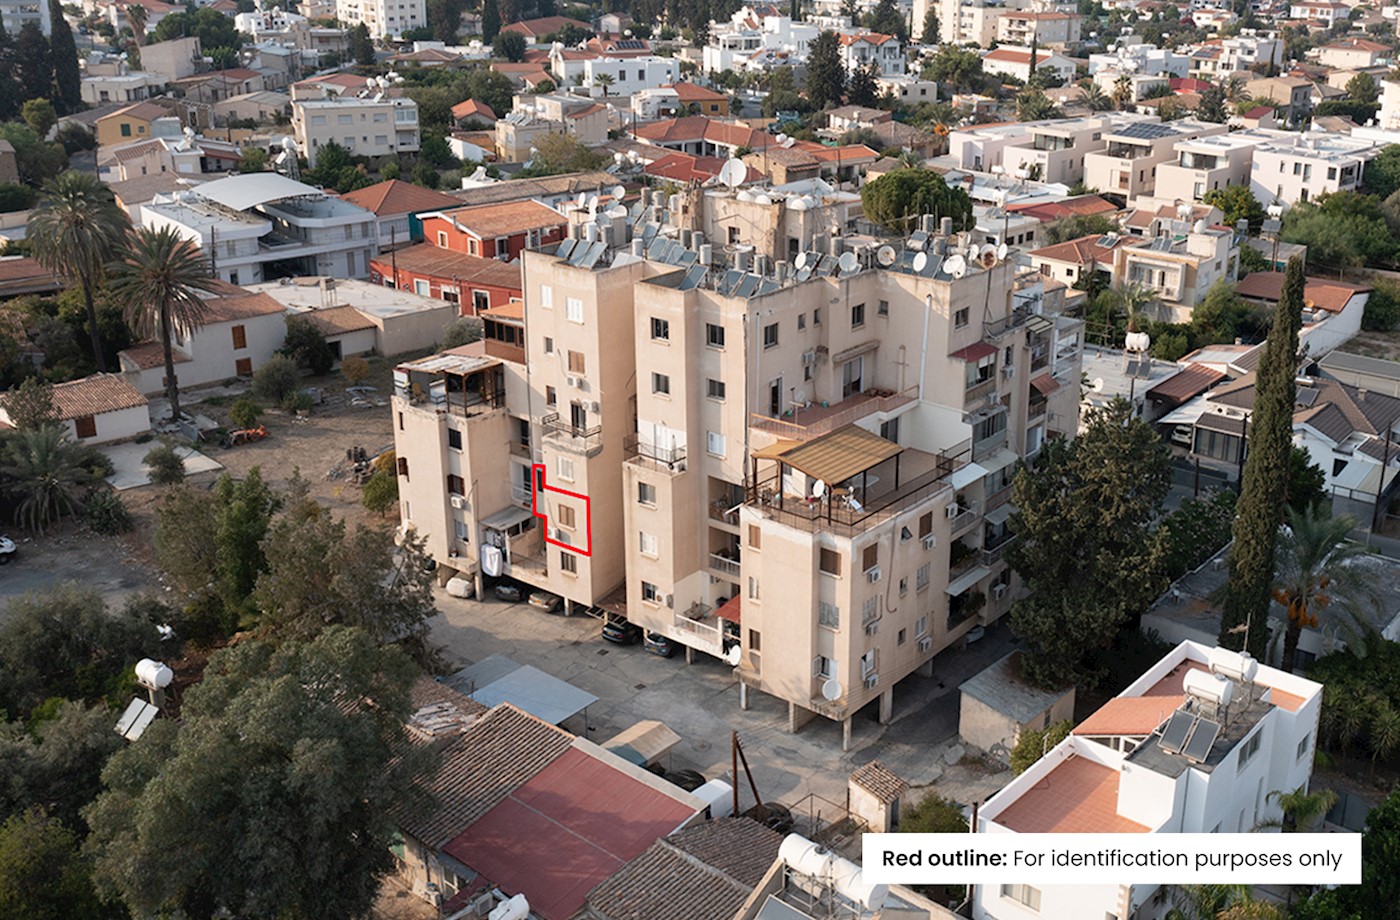 Two-bedroom Apartment in Chryseleousa (parish), Strovolos, Nicosia 1/11